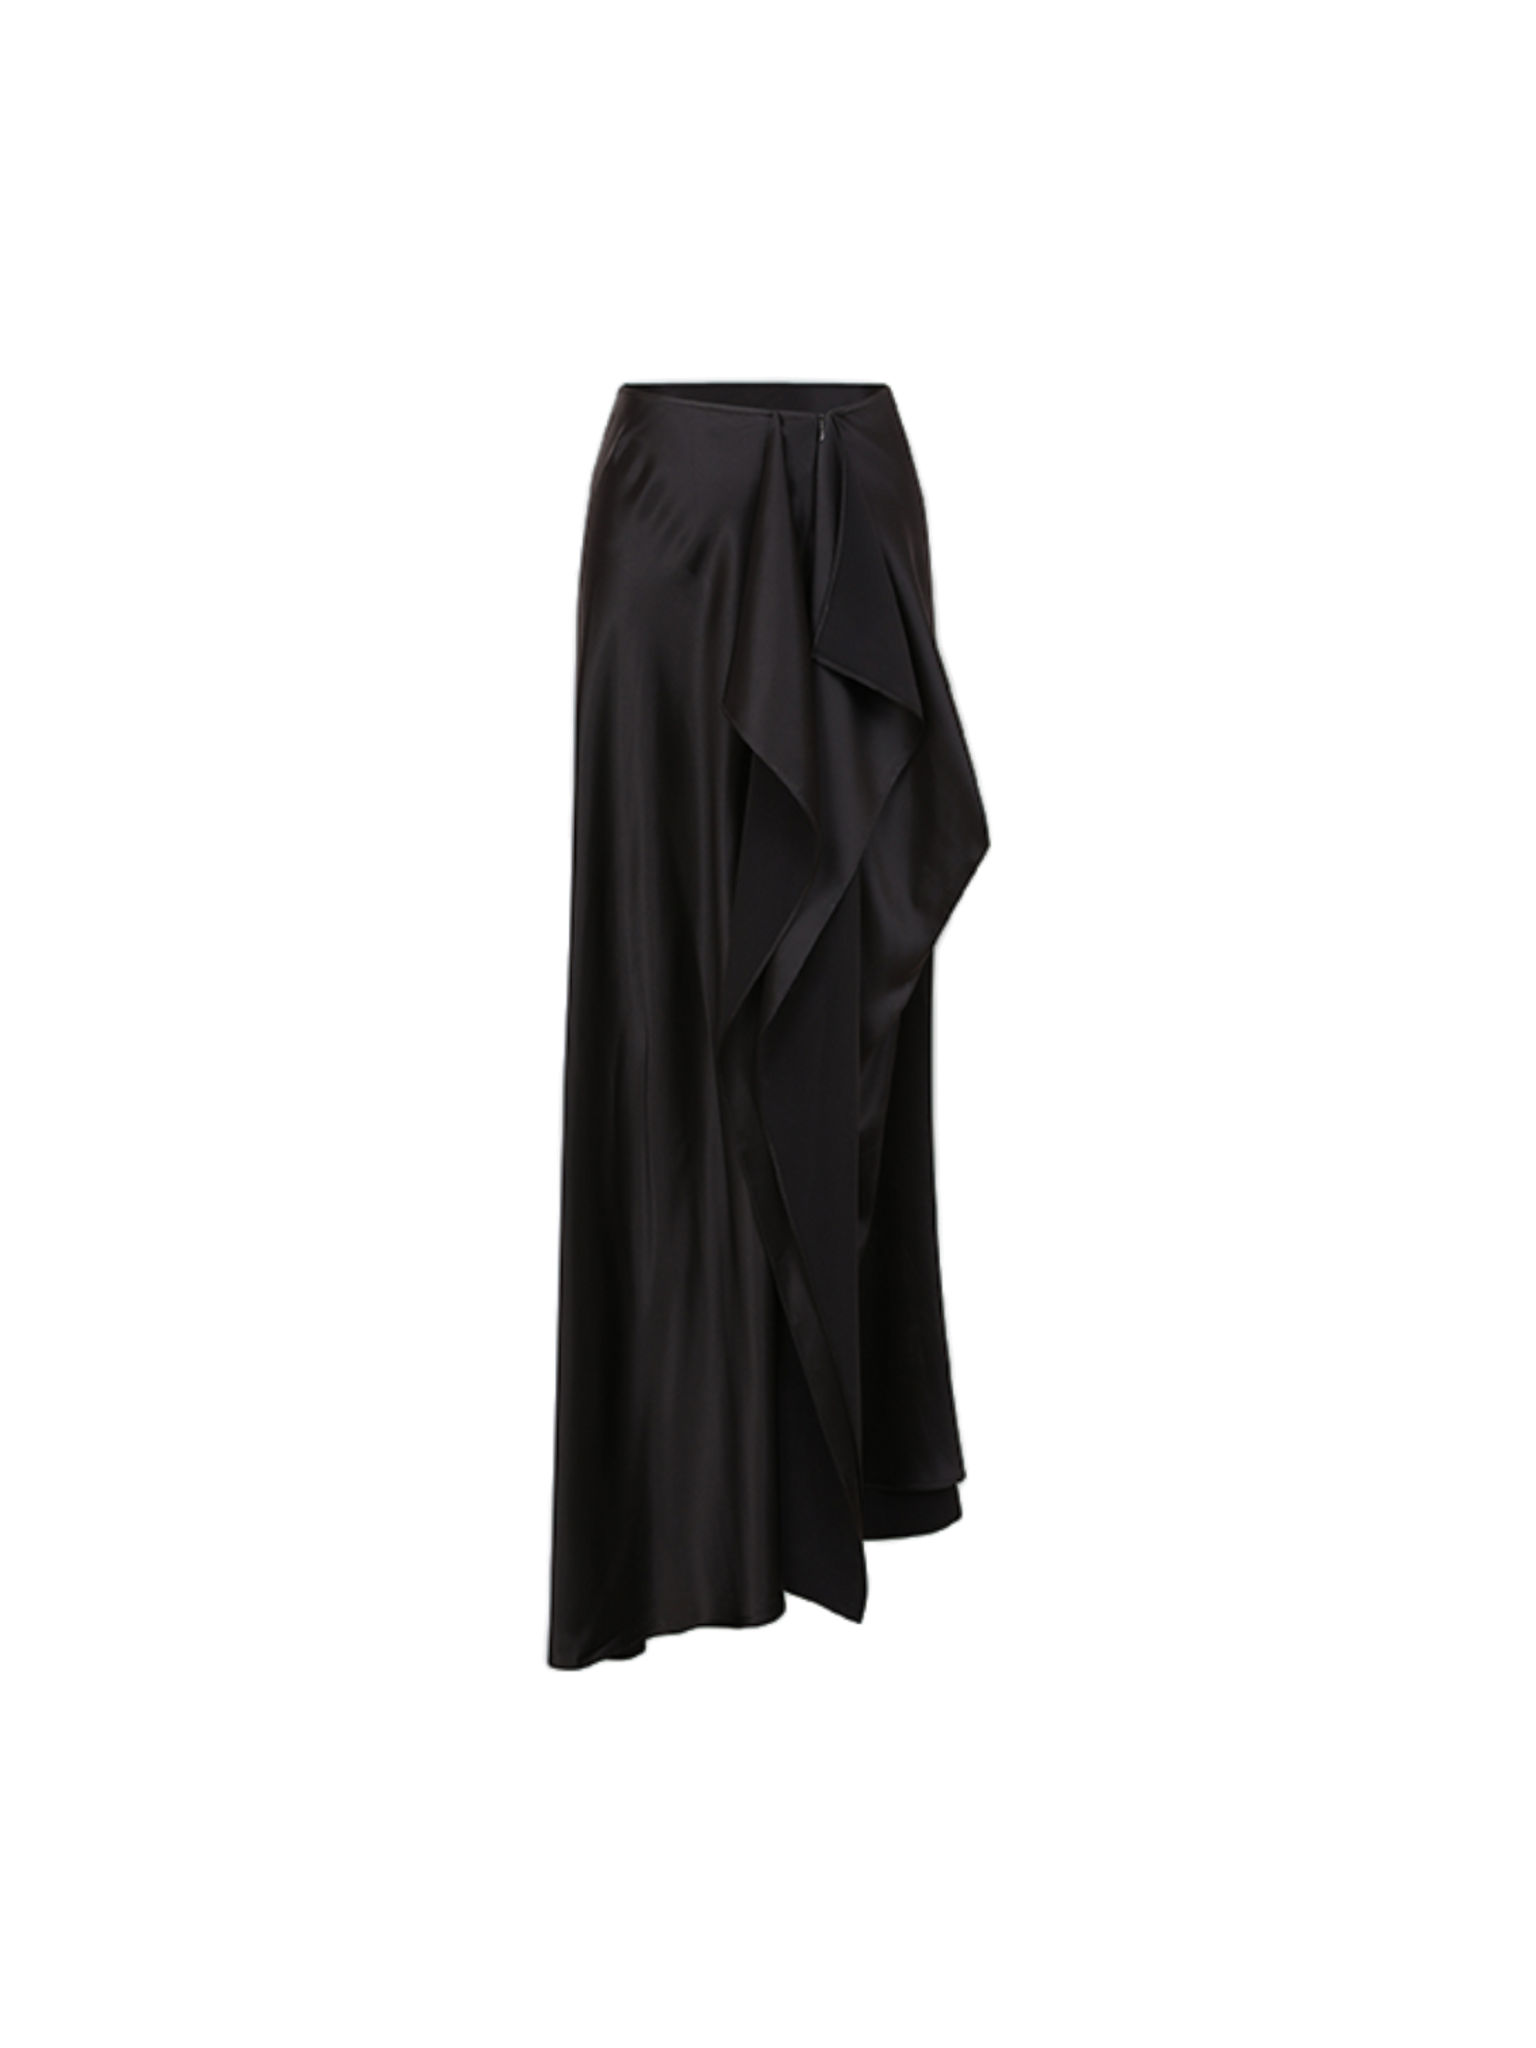 Black Floating Layer Skirt